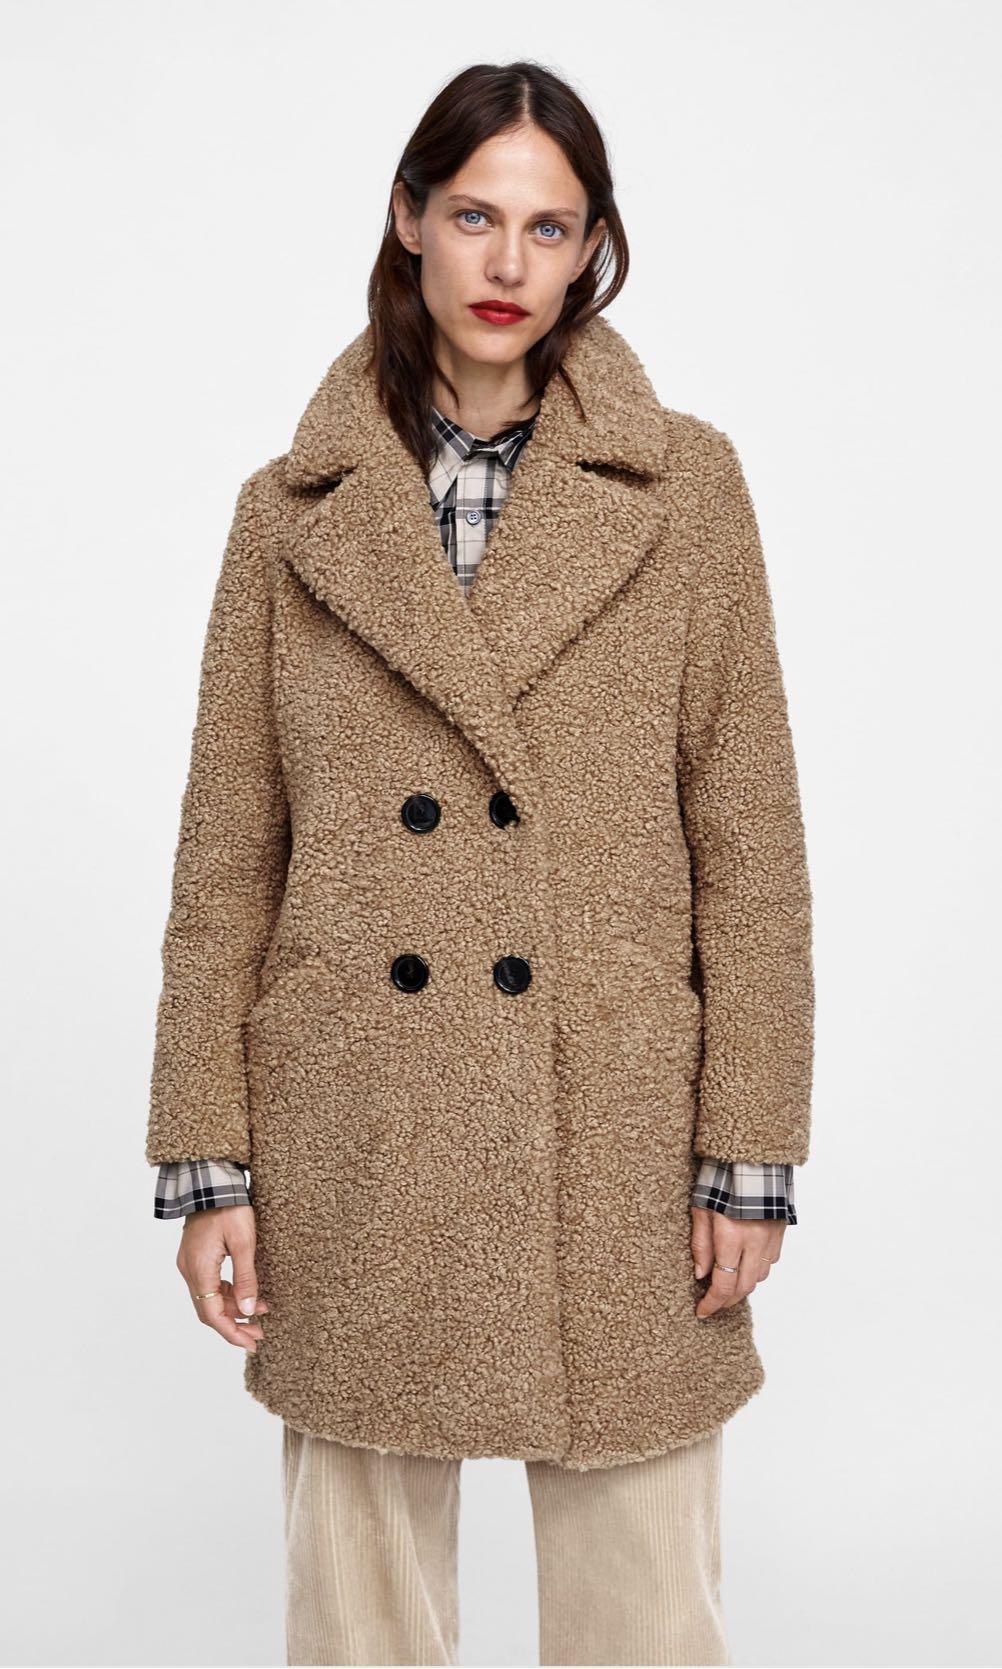 Zara Textured Faux Shearling Teddy Bear Coat, Women's Fashion, Coats ...